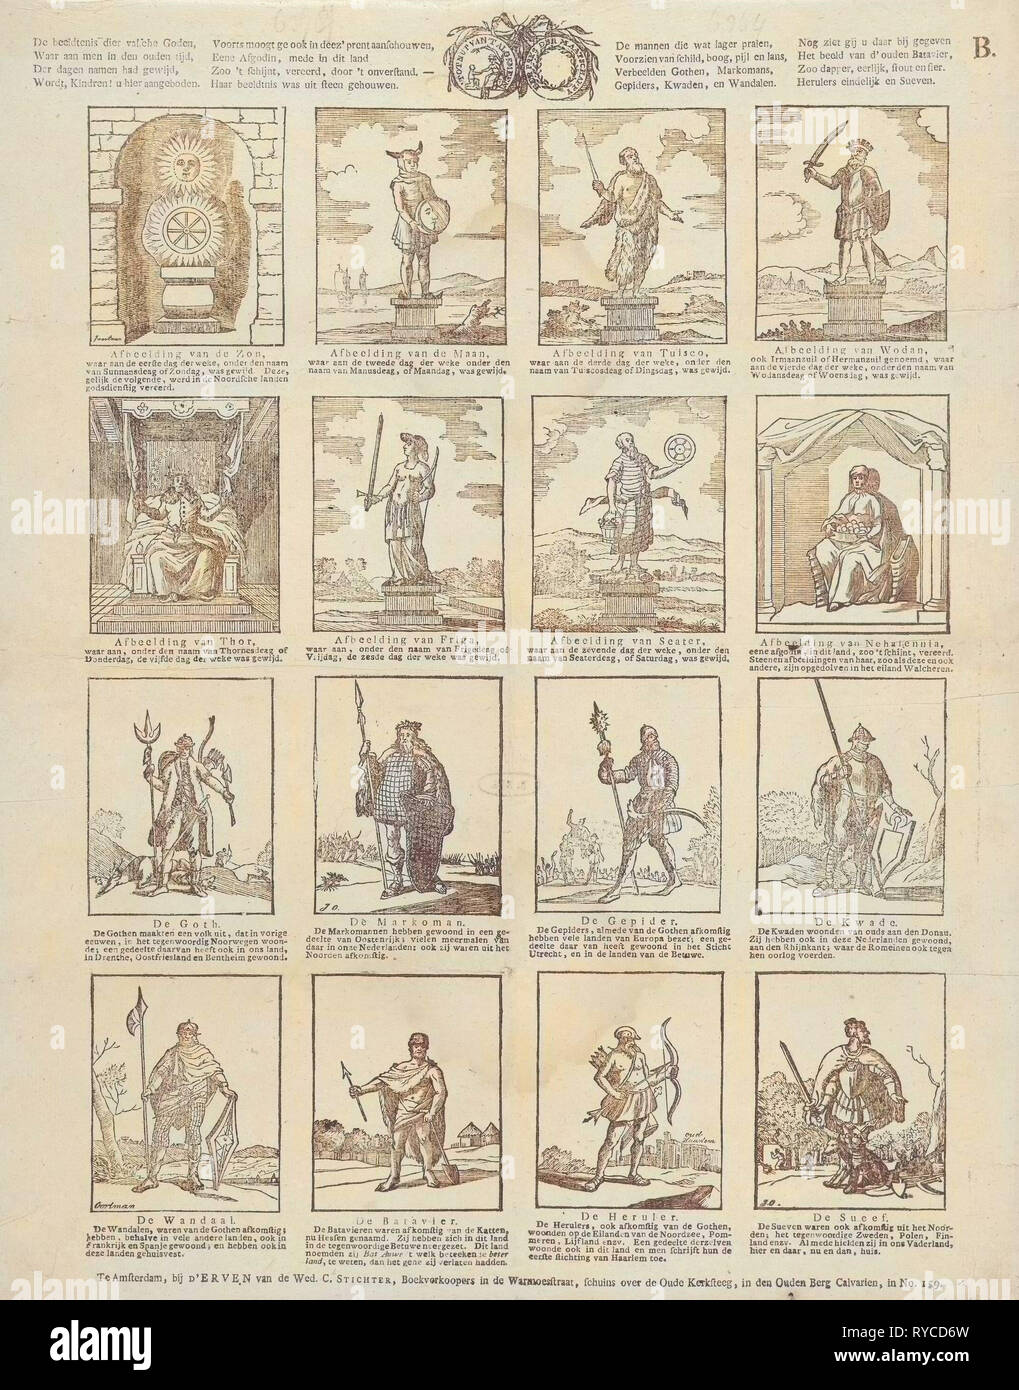 False Gods. 'De beeldtenis dier valsche goden, / Waar aan men in den ouden tijd [..]', Jan Oortman (Sr.), Erven Weduwe Cornelis Stichter, 1784 - 1813 Stock Photo